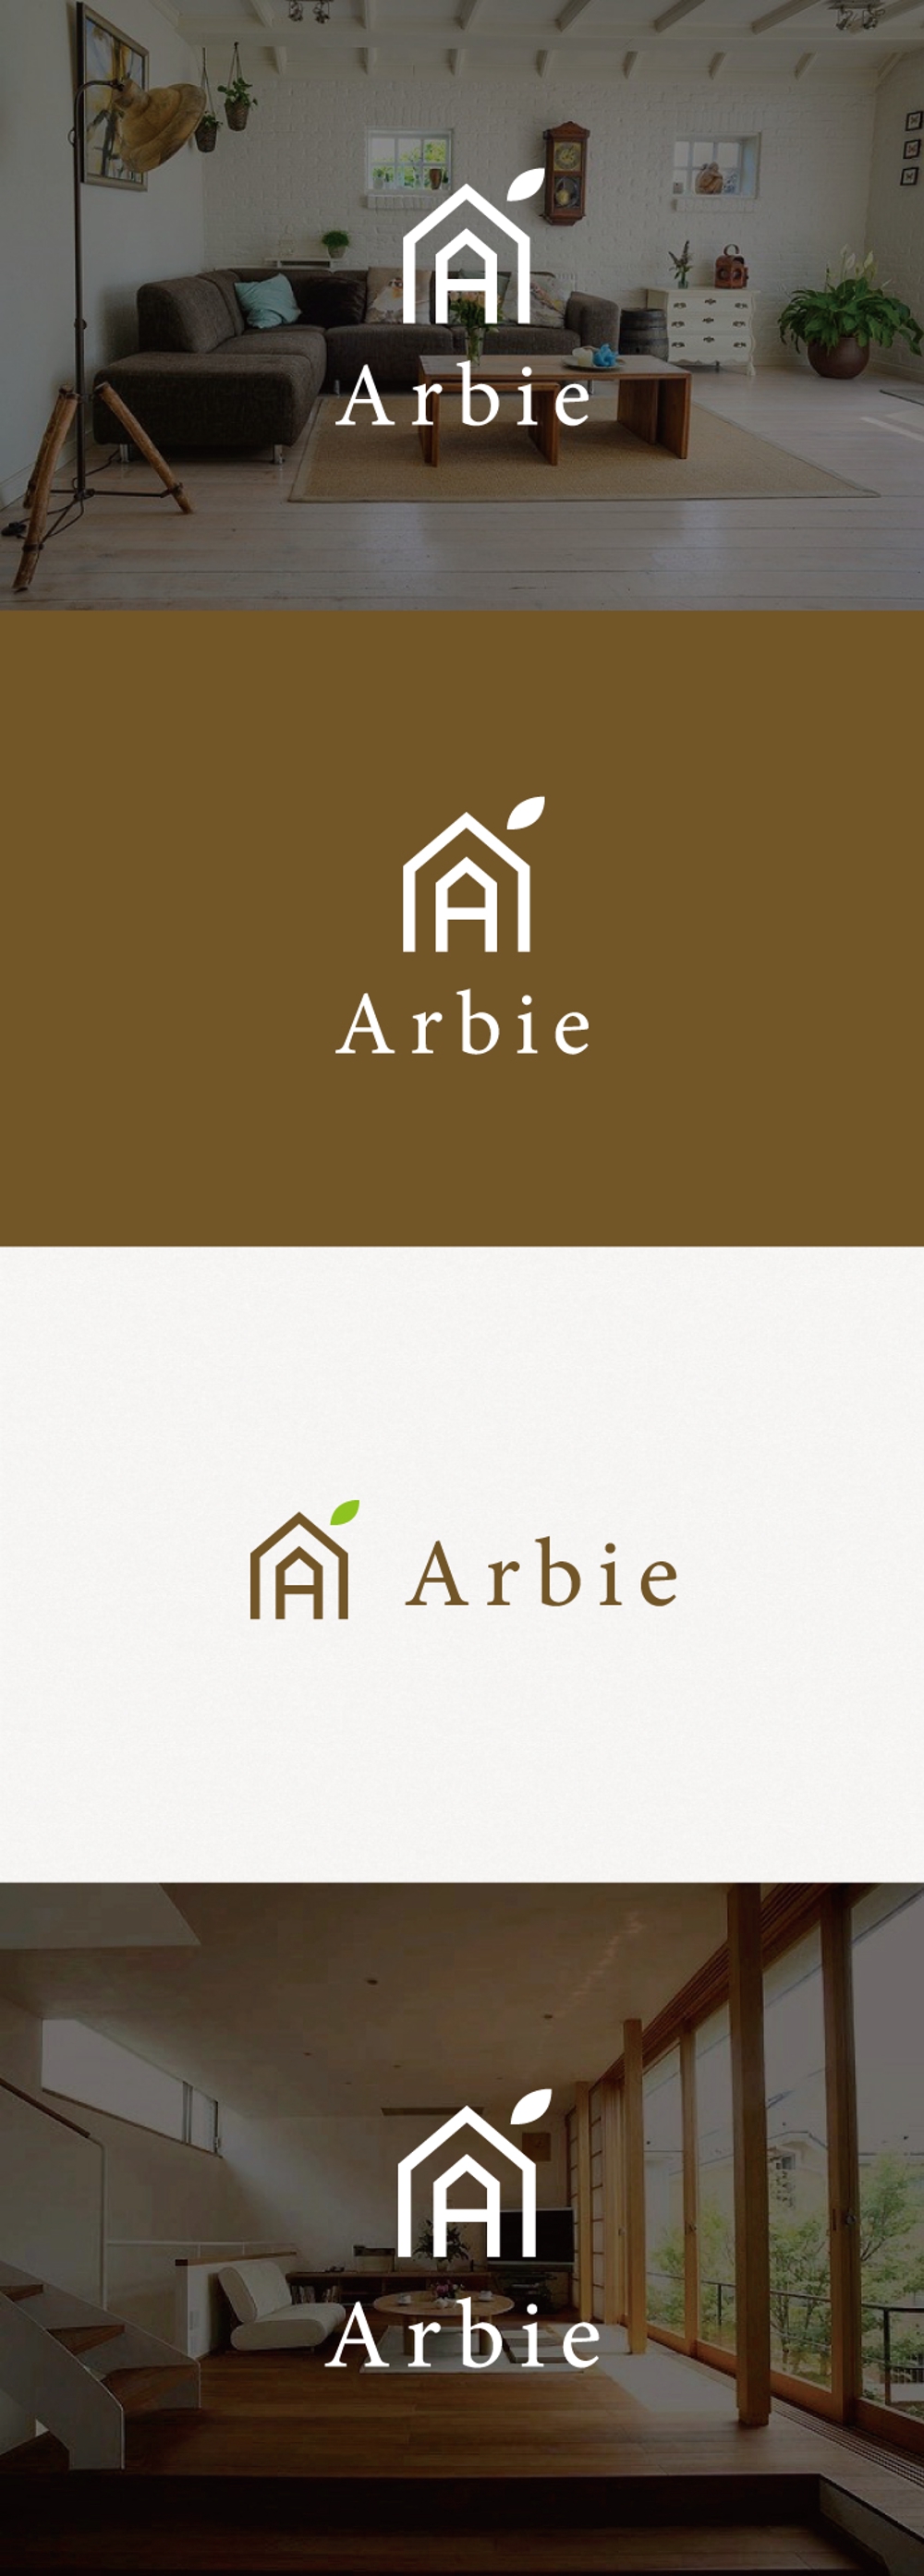 キノセンス 規格住宅「Arbie(アルビエ)」のロゴ